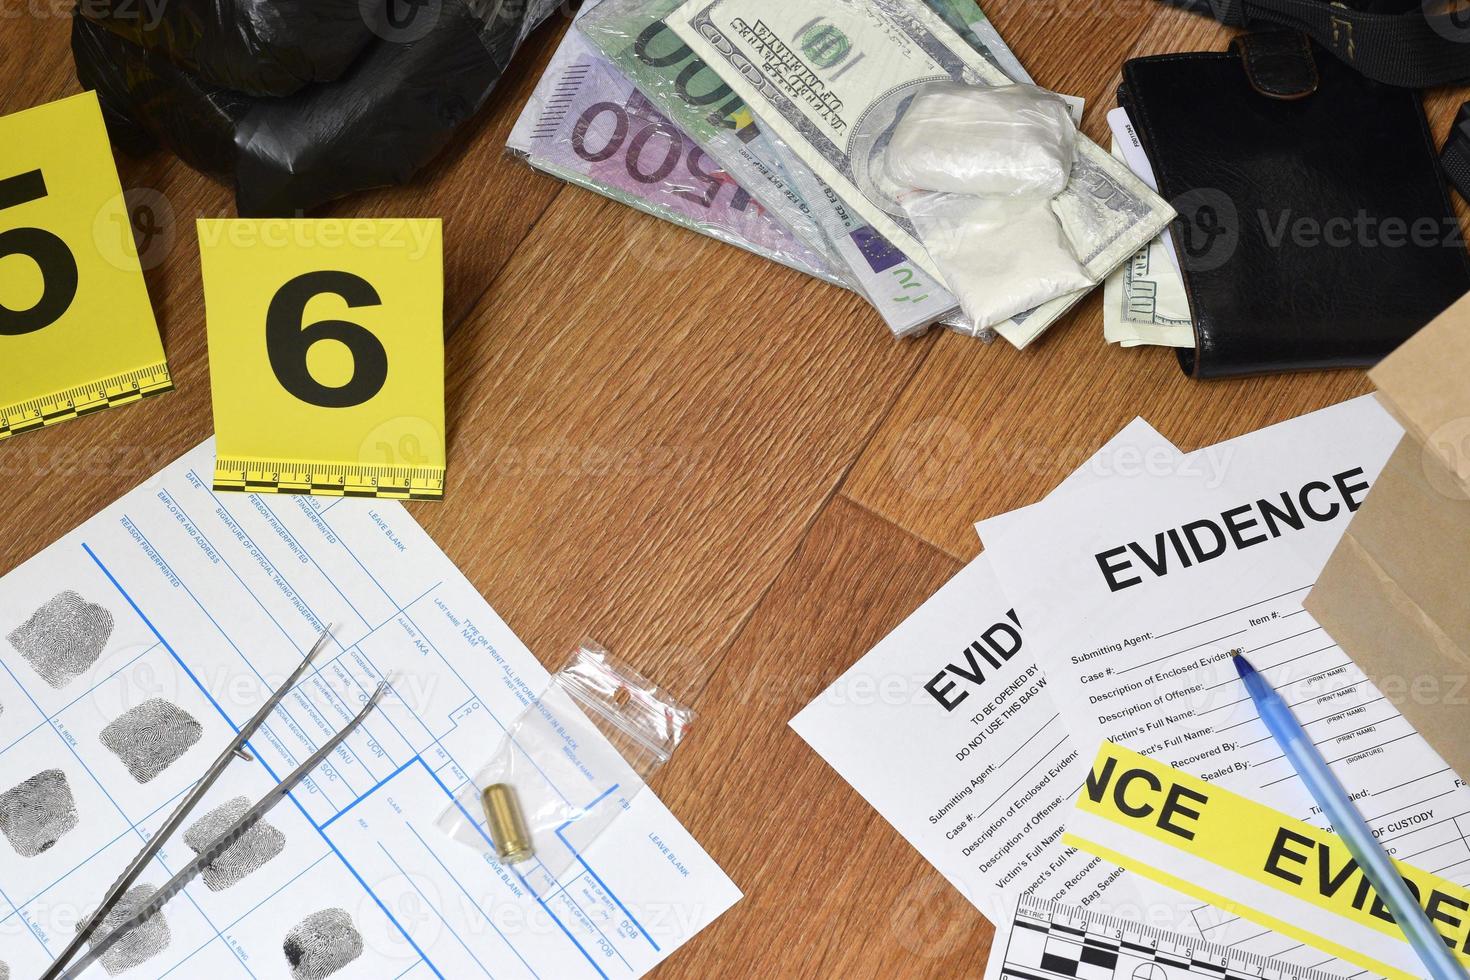 etiquetas de cadena de custodia de evidencia y bolsa de papel marrón con huellas dactilares la tarjeta del solicitante se encuentra contra grandes paquetes de heroína y paquetes de billetes de dinero como evidencia en el proceso de investigación de la escena del crimen foto